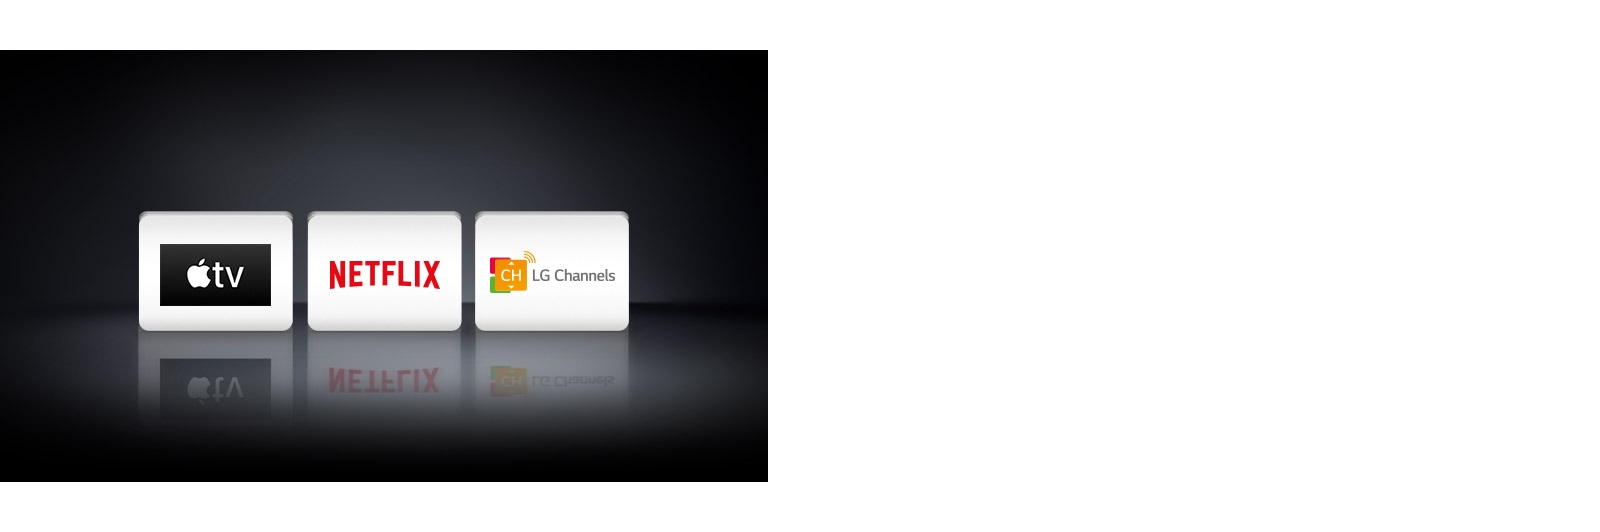 Trois logos d'applications affichés de gauche à droite: Apple TV, Netflix et LG Channels.